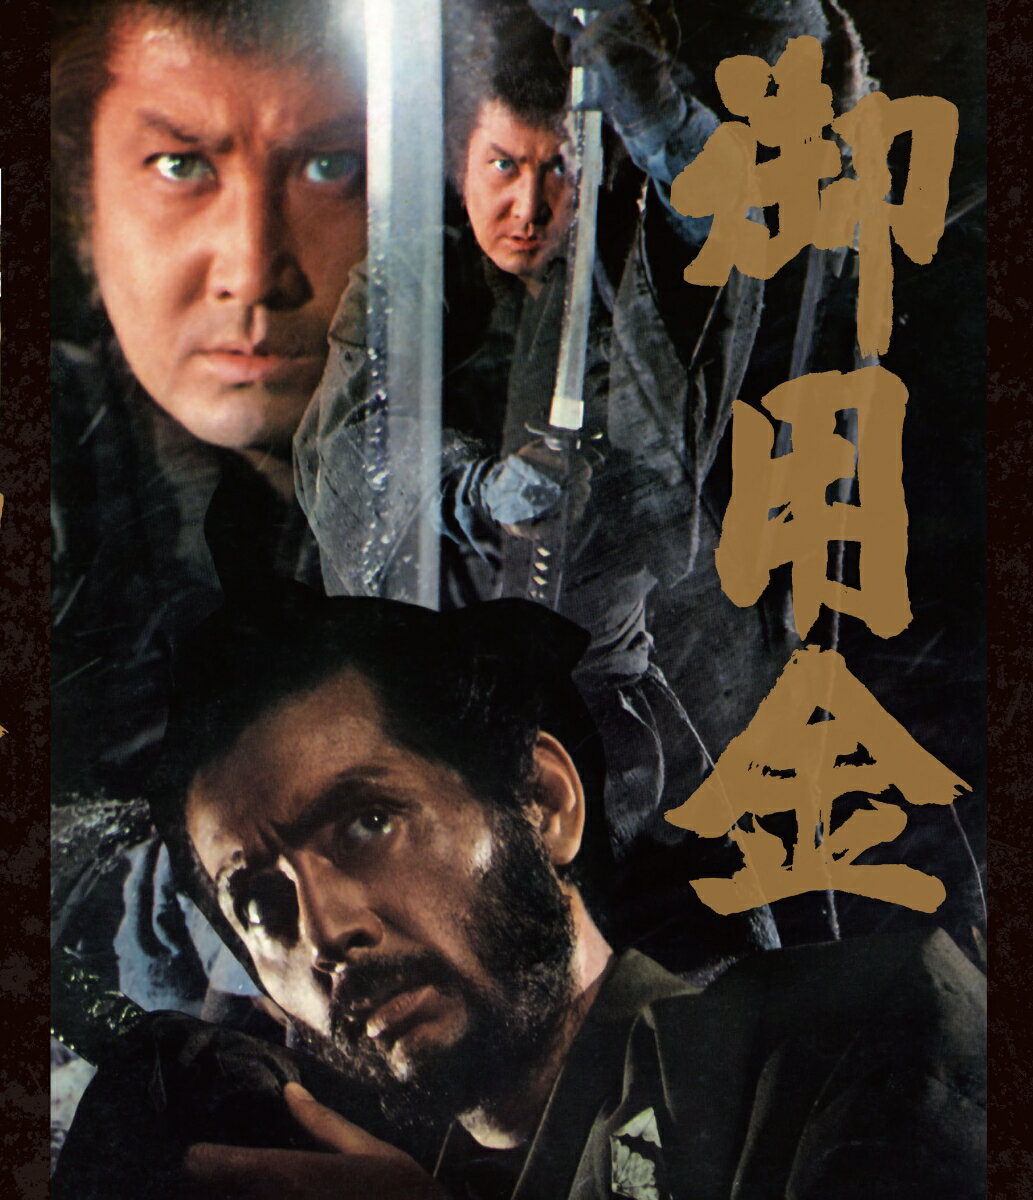 日本映画界の鬼才・五社英雄監督が2022年に没後30年という節目を迎えるにあたり、
五社監督の代表作の中で、未だBlu-ray・DVD化されていない
『御用金』（1969）、『人斬り』（1969）、『女殺油地獄』（1992）の3作品のセルBlu-ray&DVDを、
同監督の命日である8月30日にリリース。